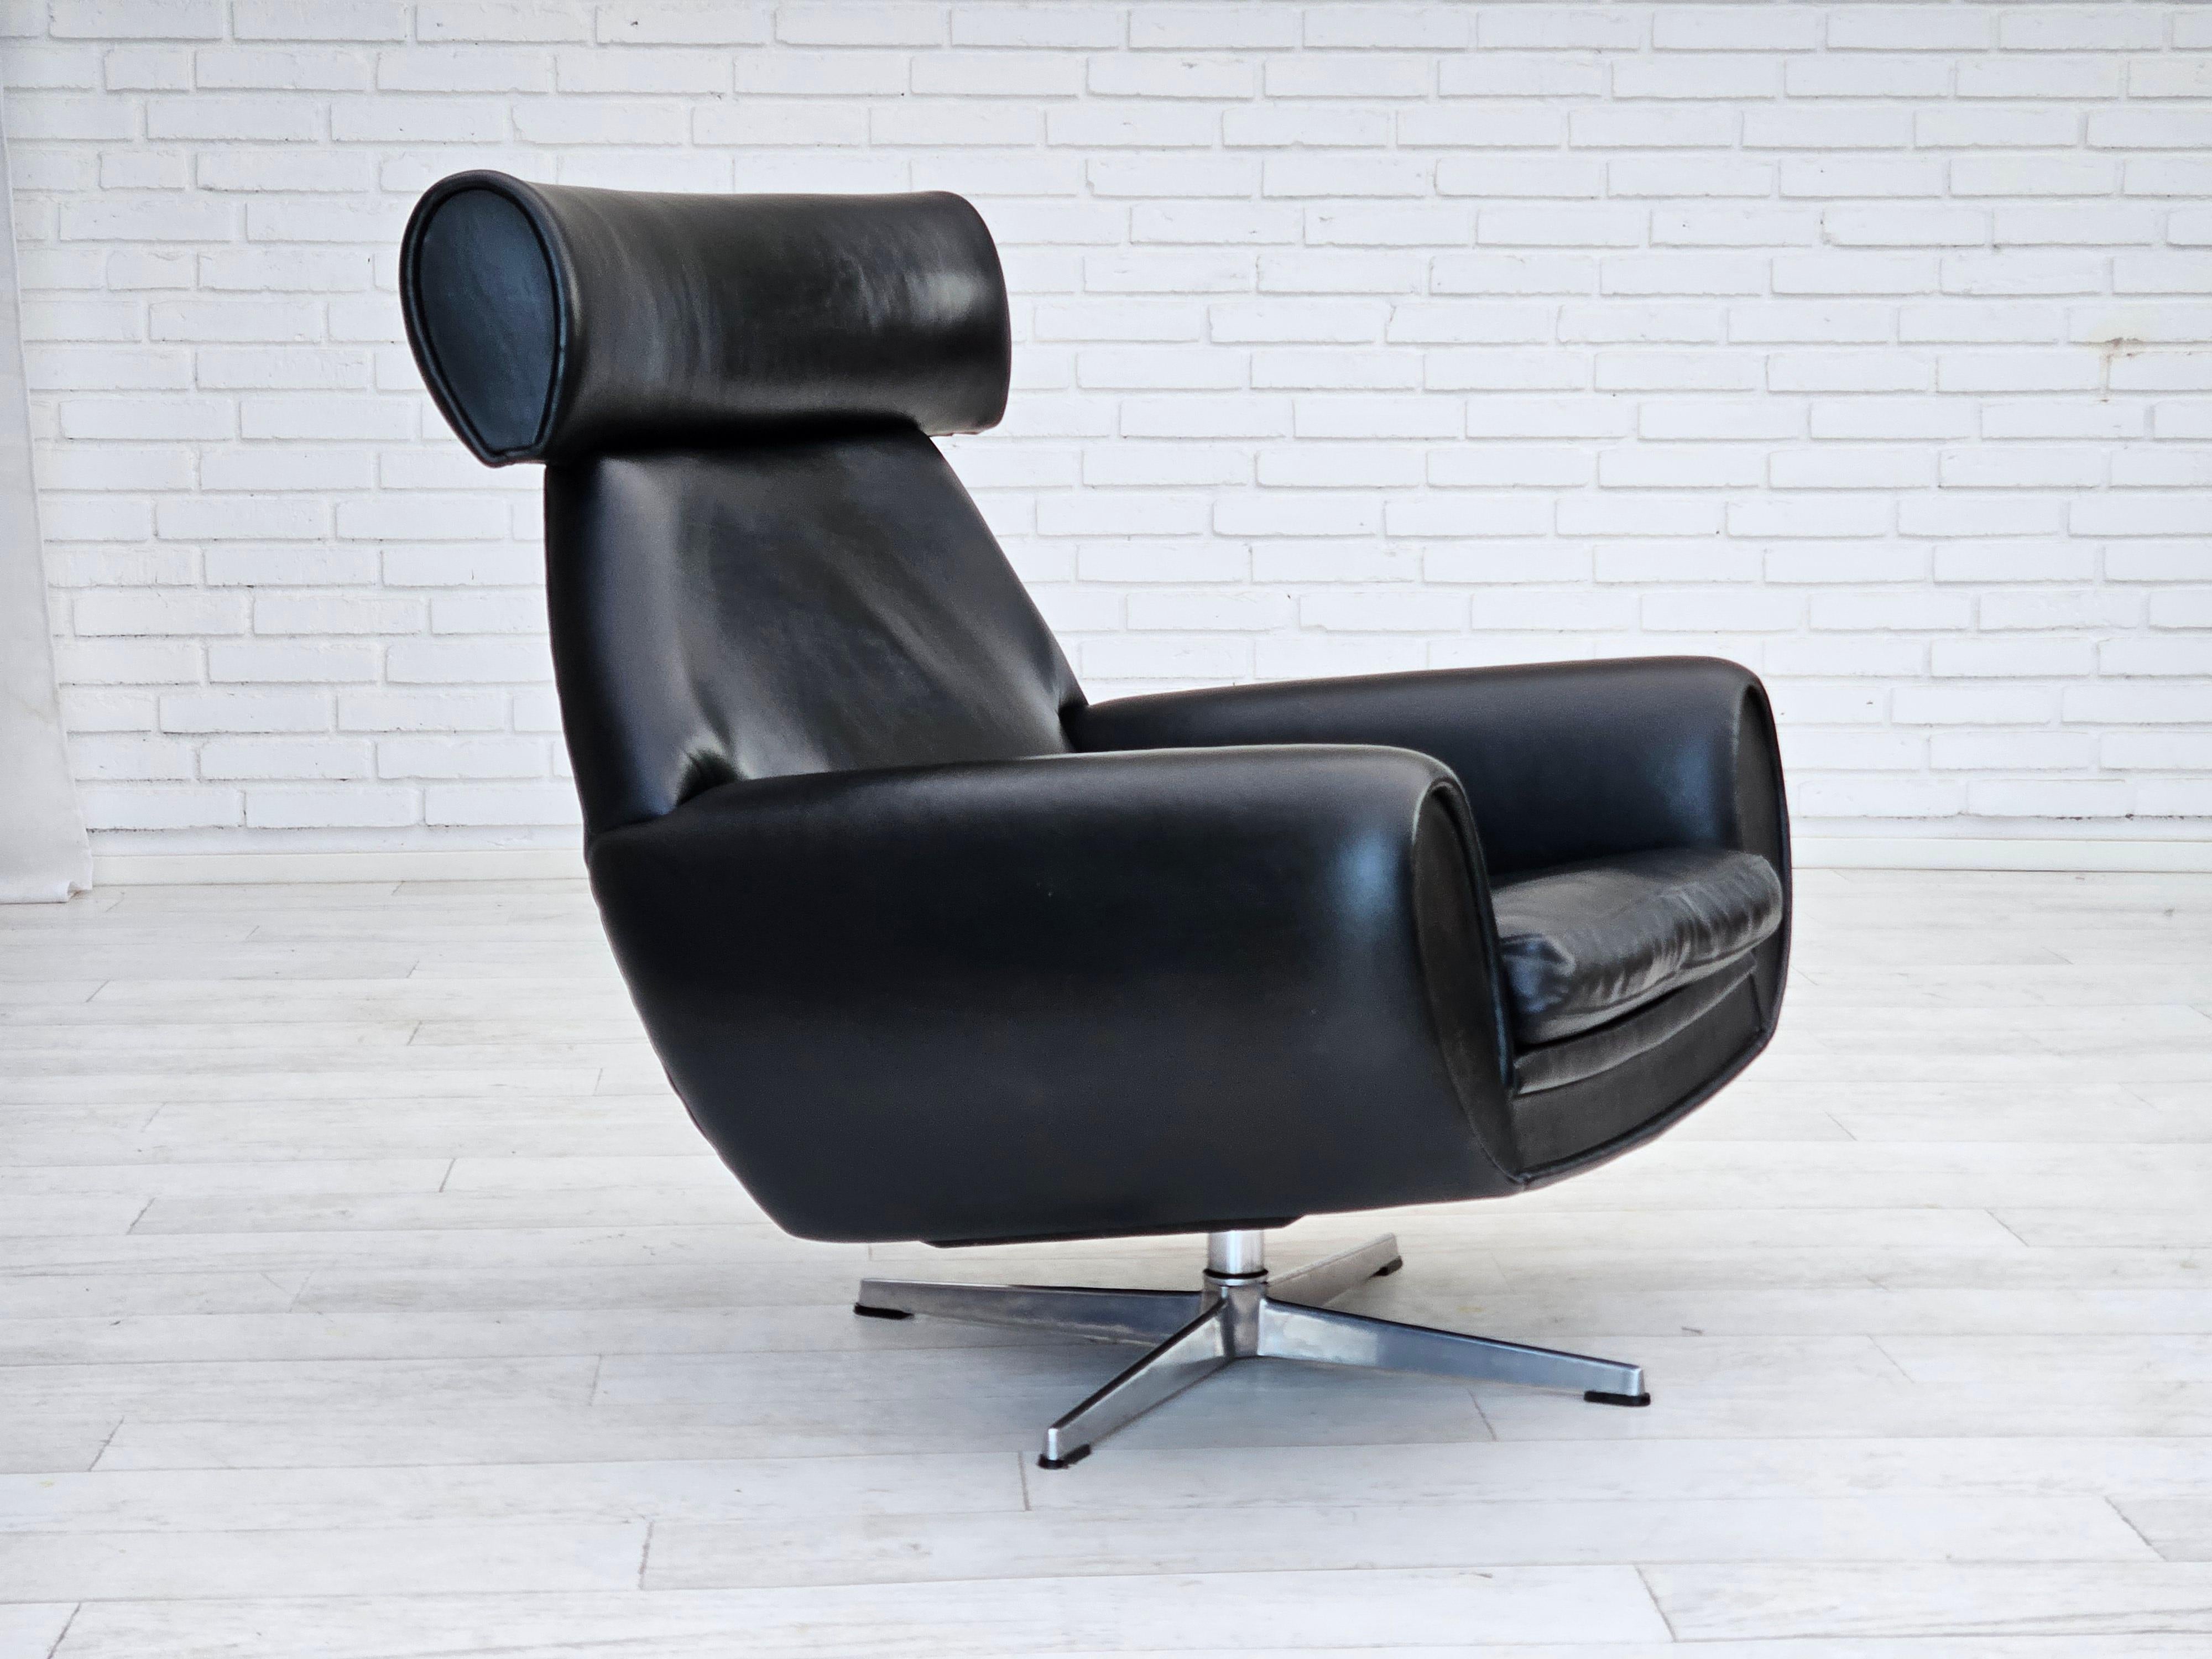 Chaise pivotante danoise des années 1960 en très bon état d'origine : pas d'odeurs ni de taches. La chaise n'est plus très utilisée depuis les années 1960. Cuir noir d'origine, base en aluminium moulé. Fabriqué par un fabricant de meubles danois